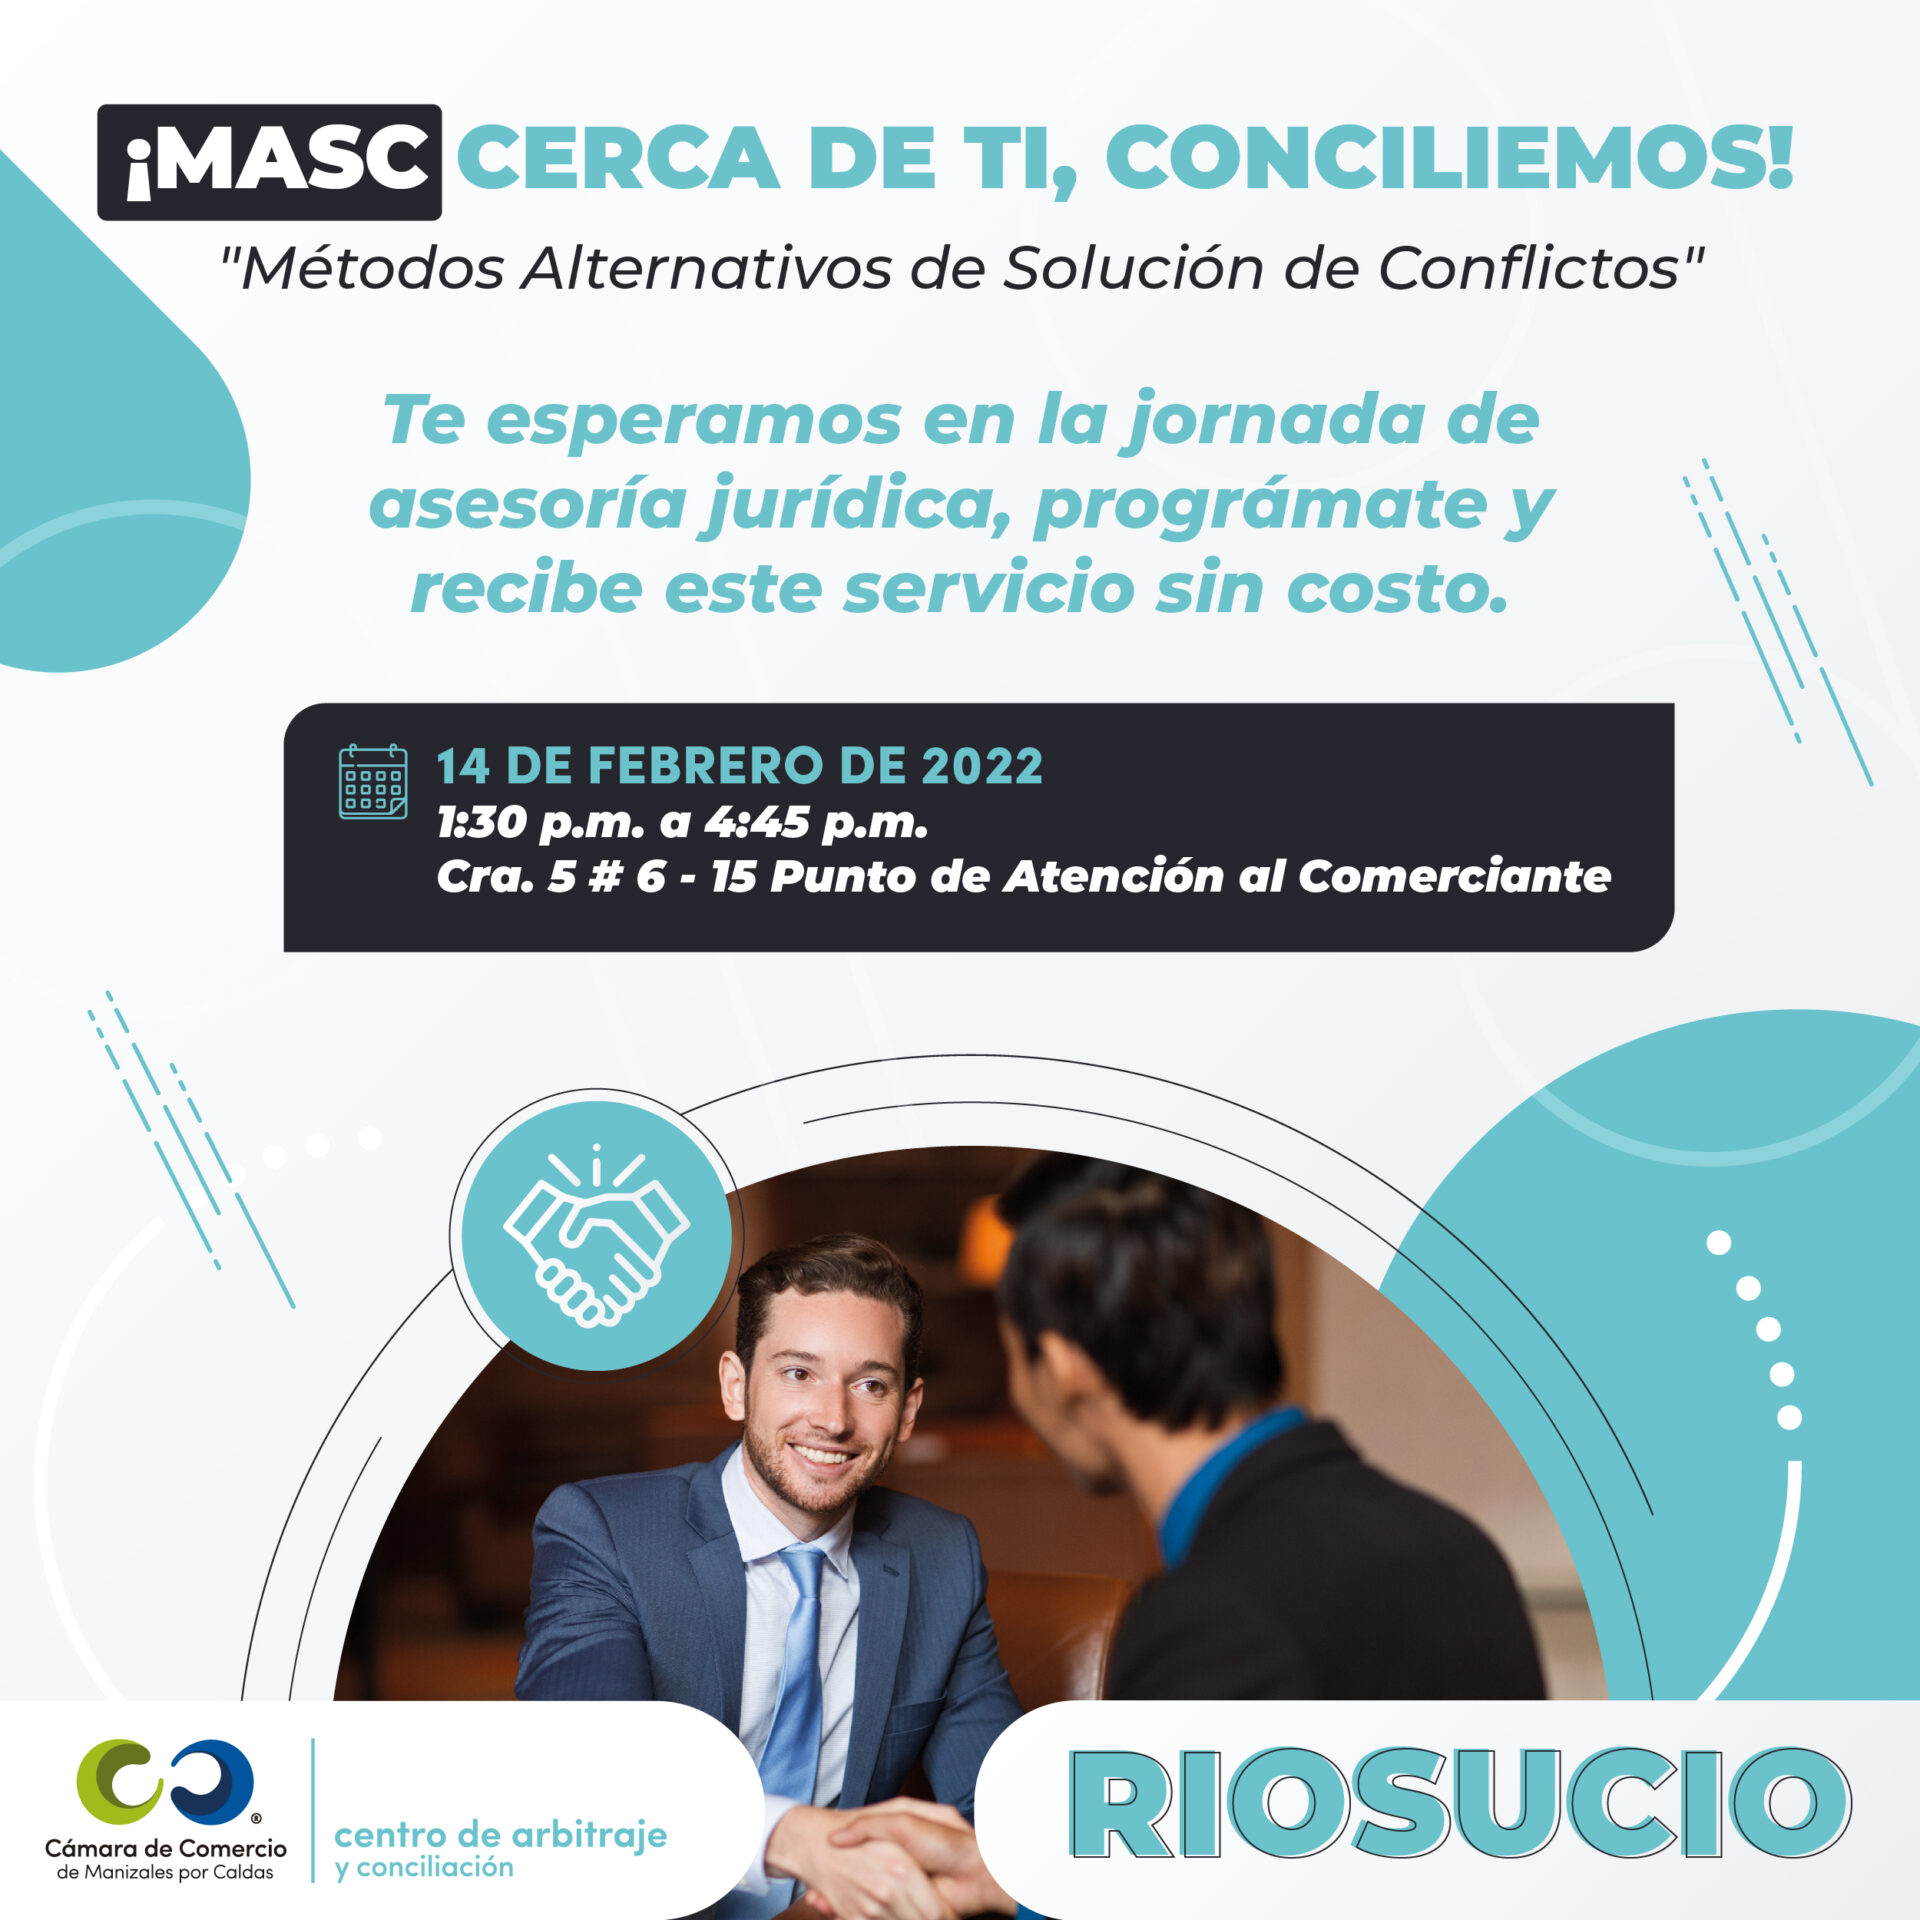 Jornada de Asesoría Jurídica en Riosucio, 14 de febrero de 2022.